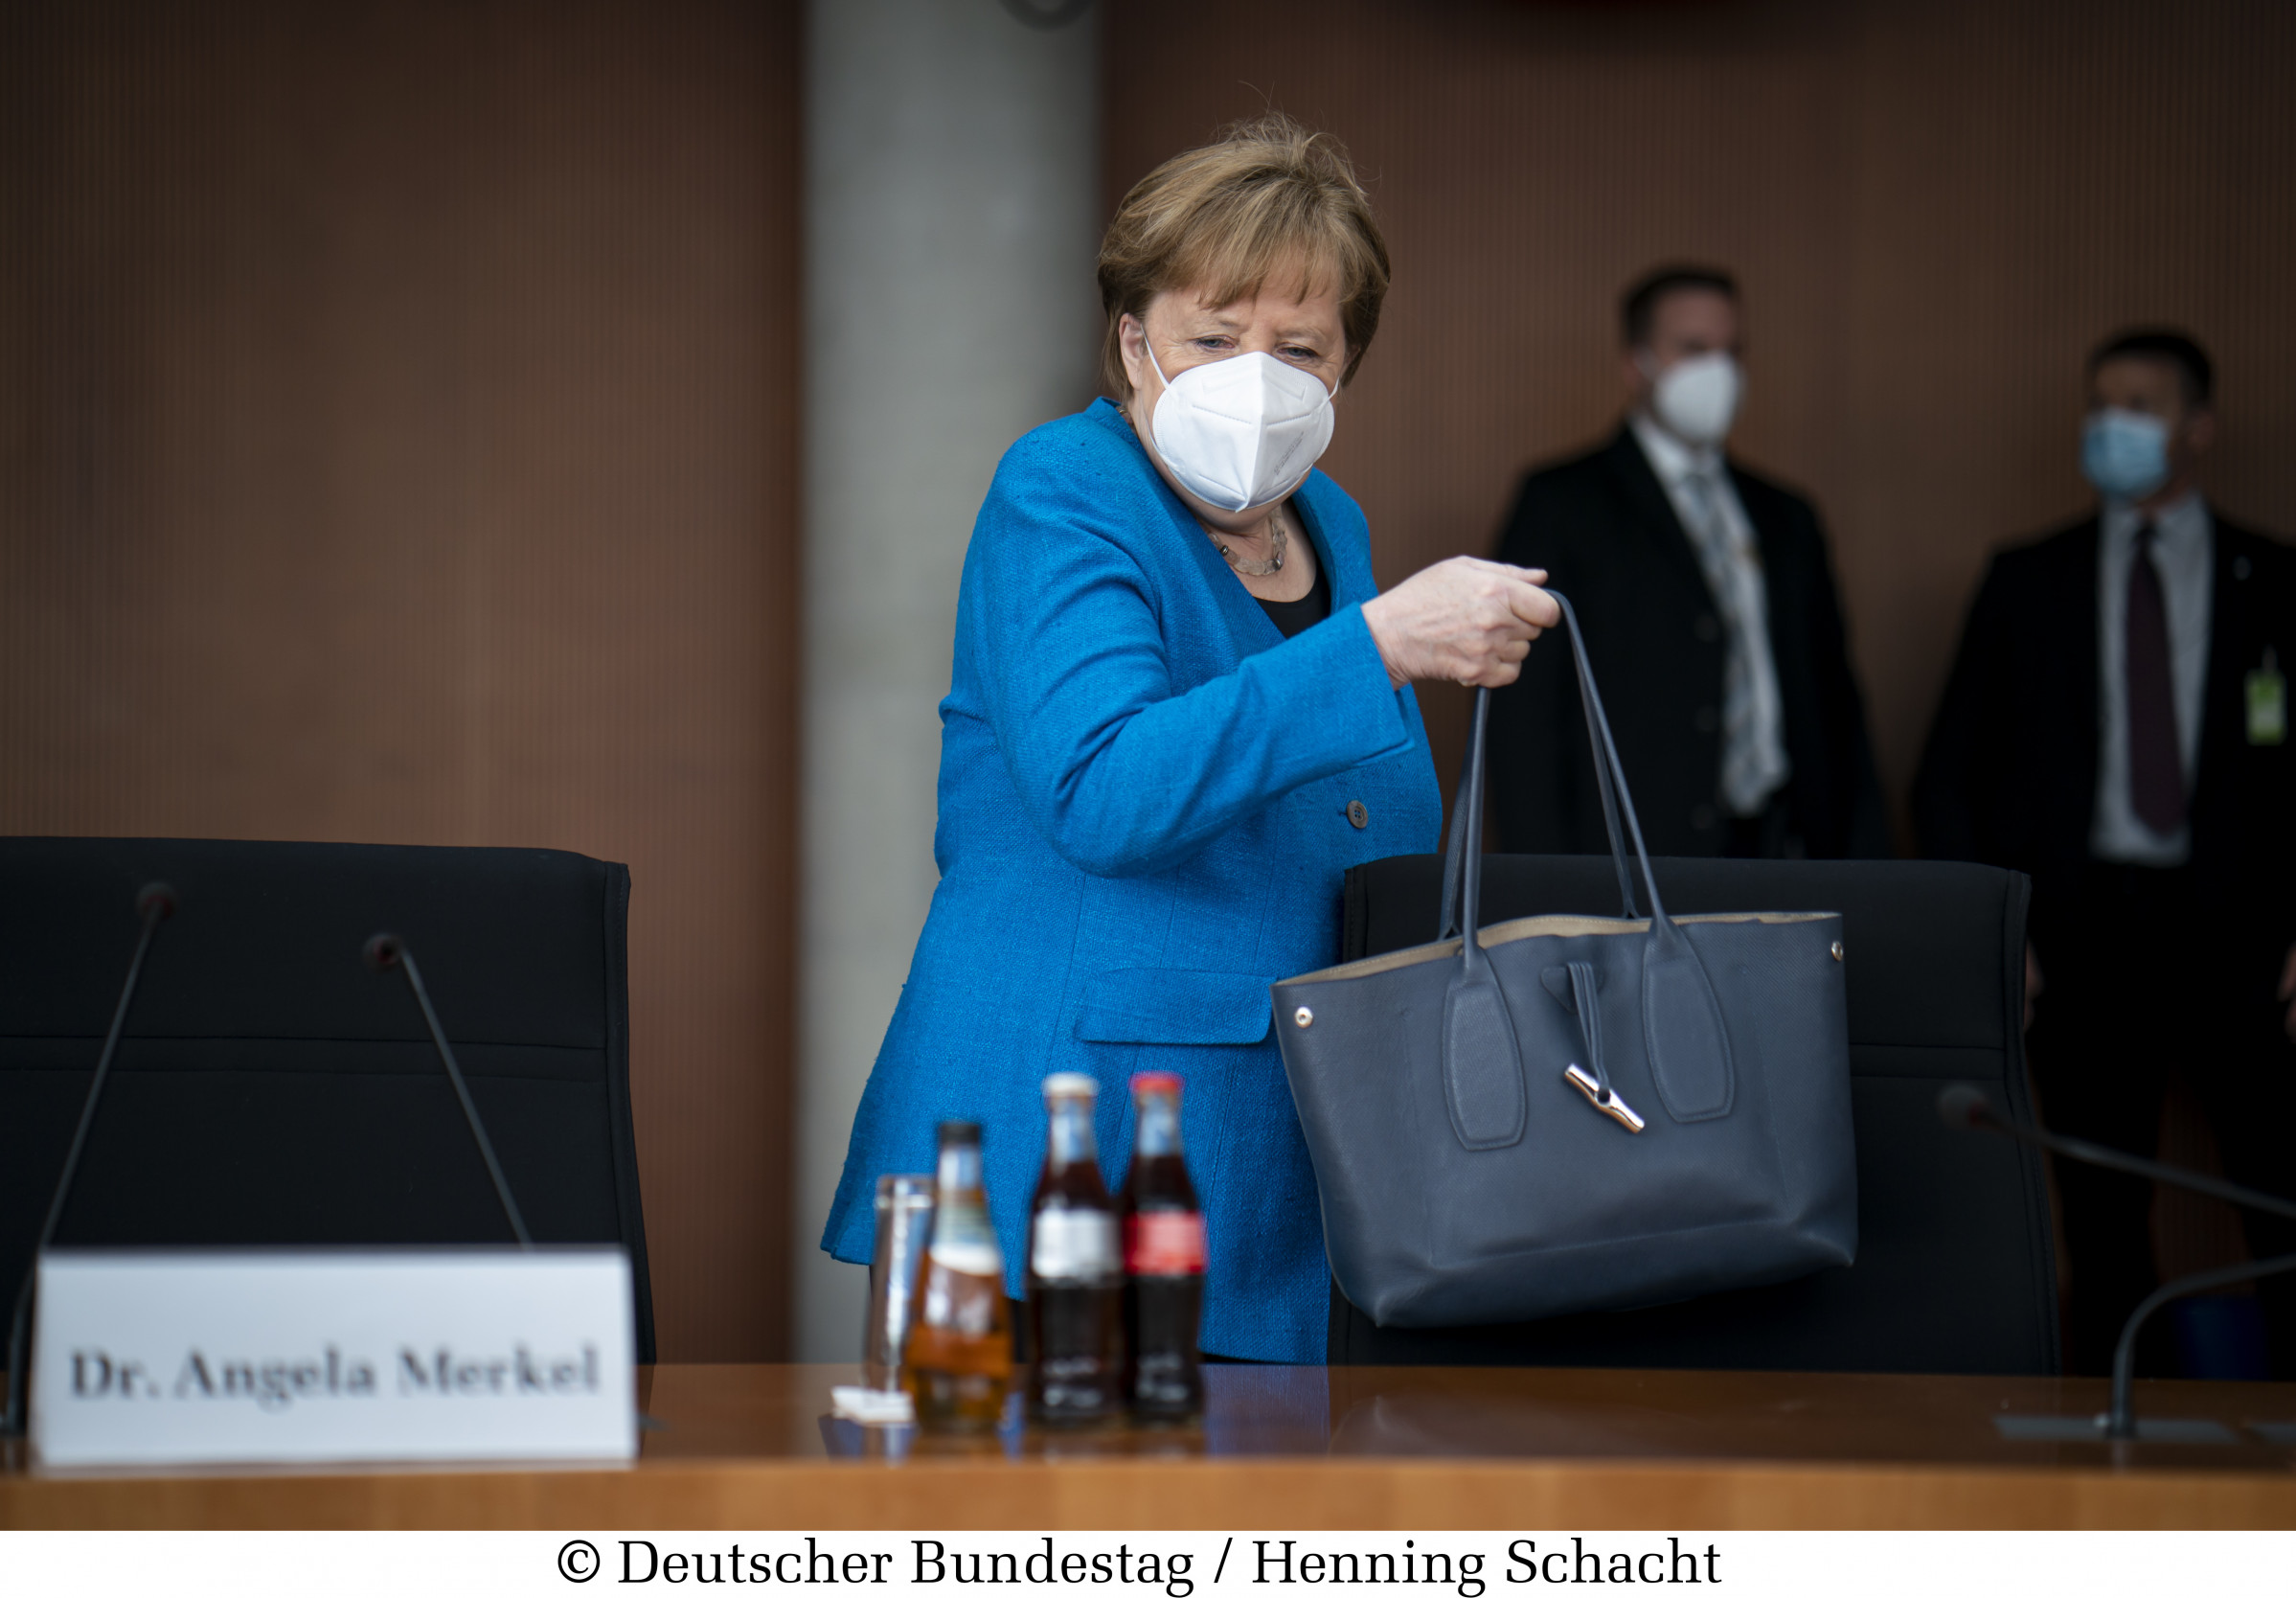 Německo zavádí rozsáhlá omezení pro neočkované, zvažuje povinnou vakcinaci od února